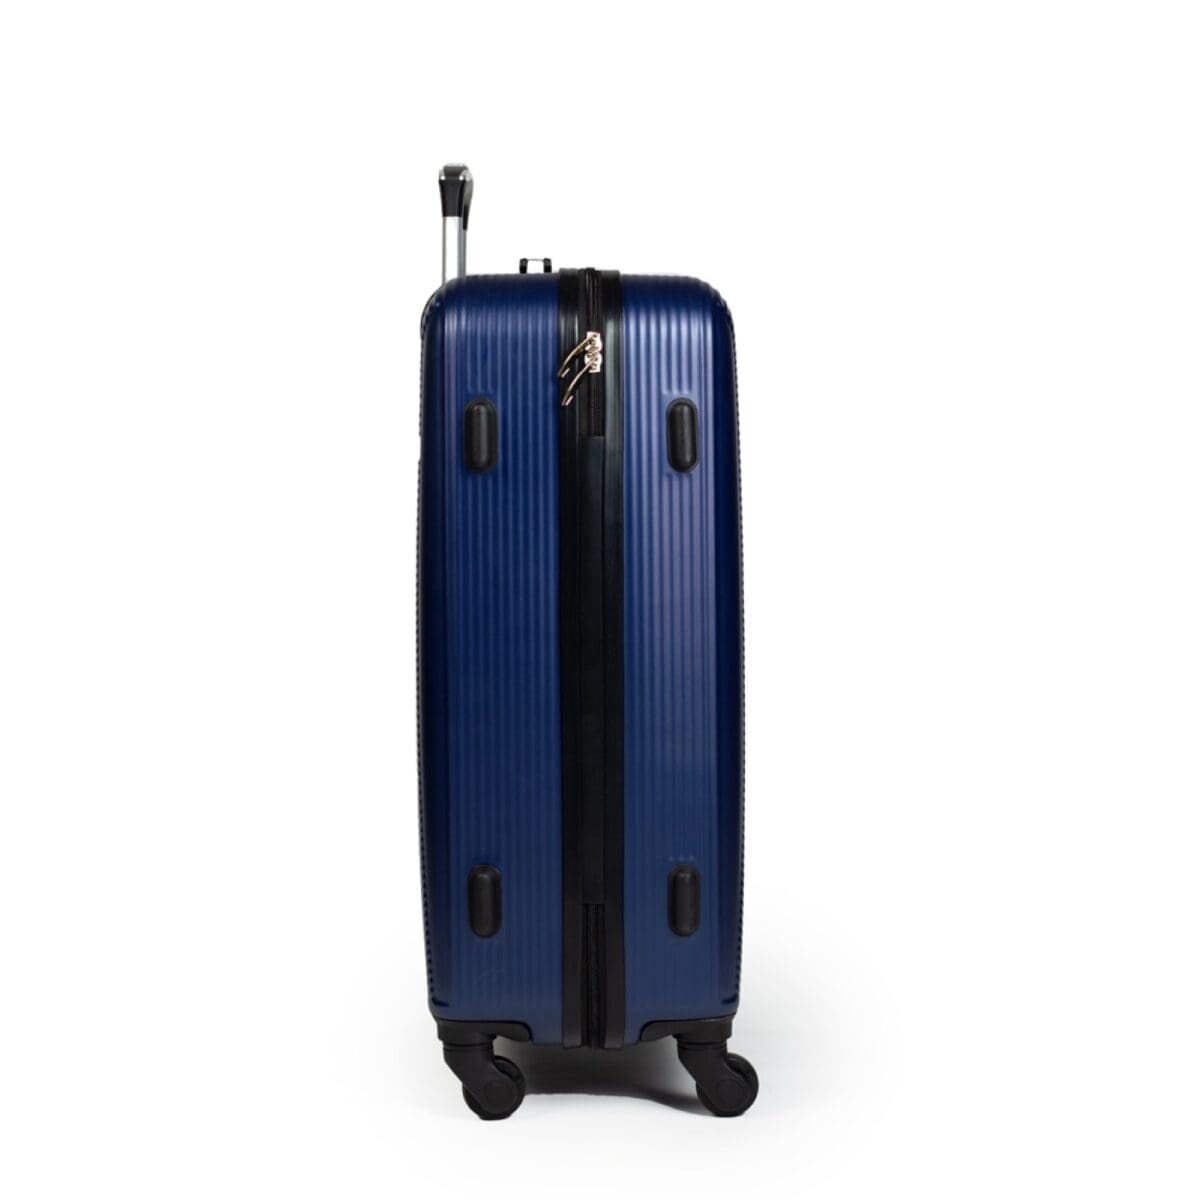 δεξιά πλευρά βαλίτσας σκούρο μπλε